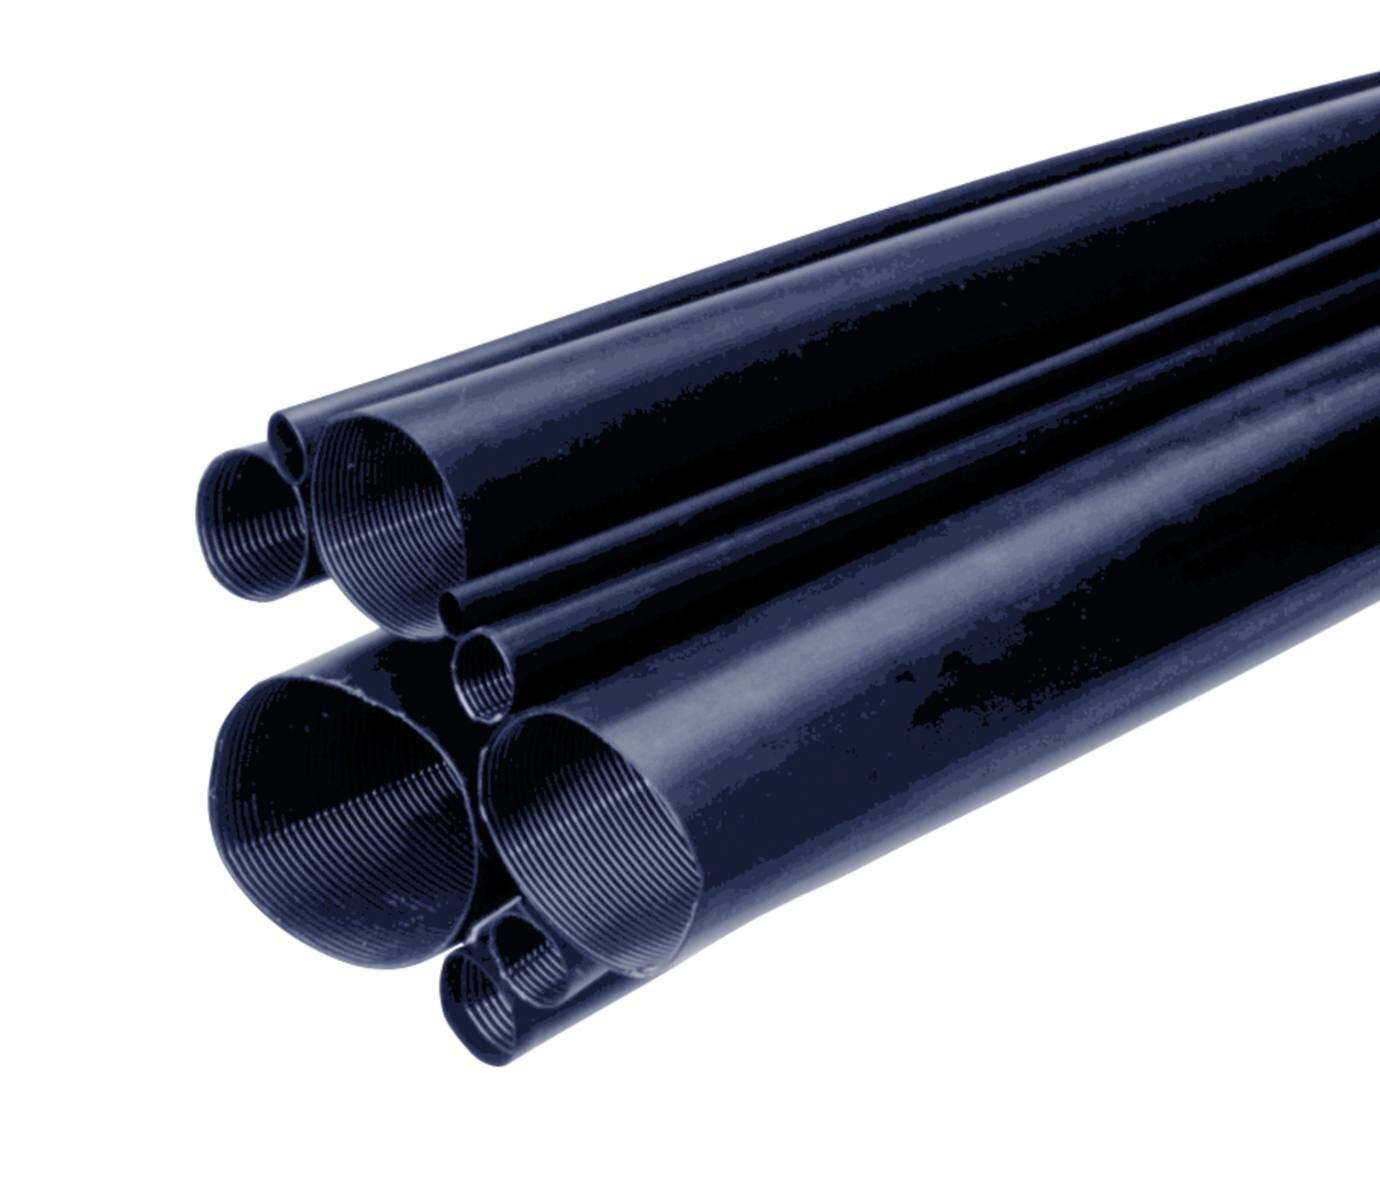 3M MDT-A Tubo termorretráctil de pared media con adhesivo, negro, 38/12 mm, 1 m